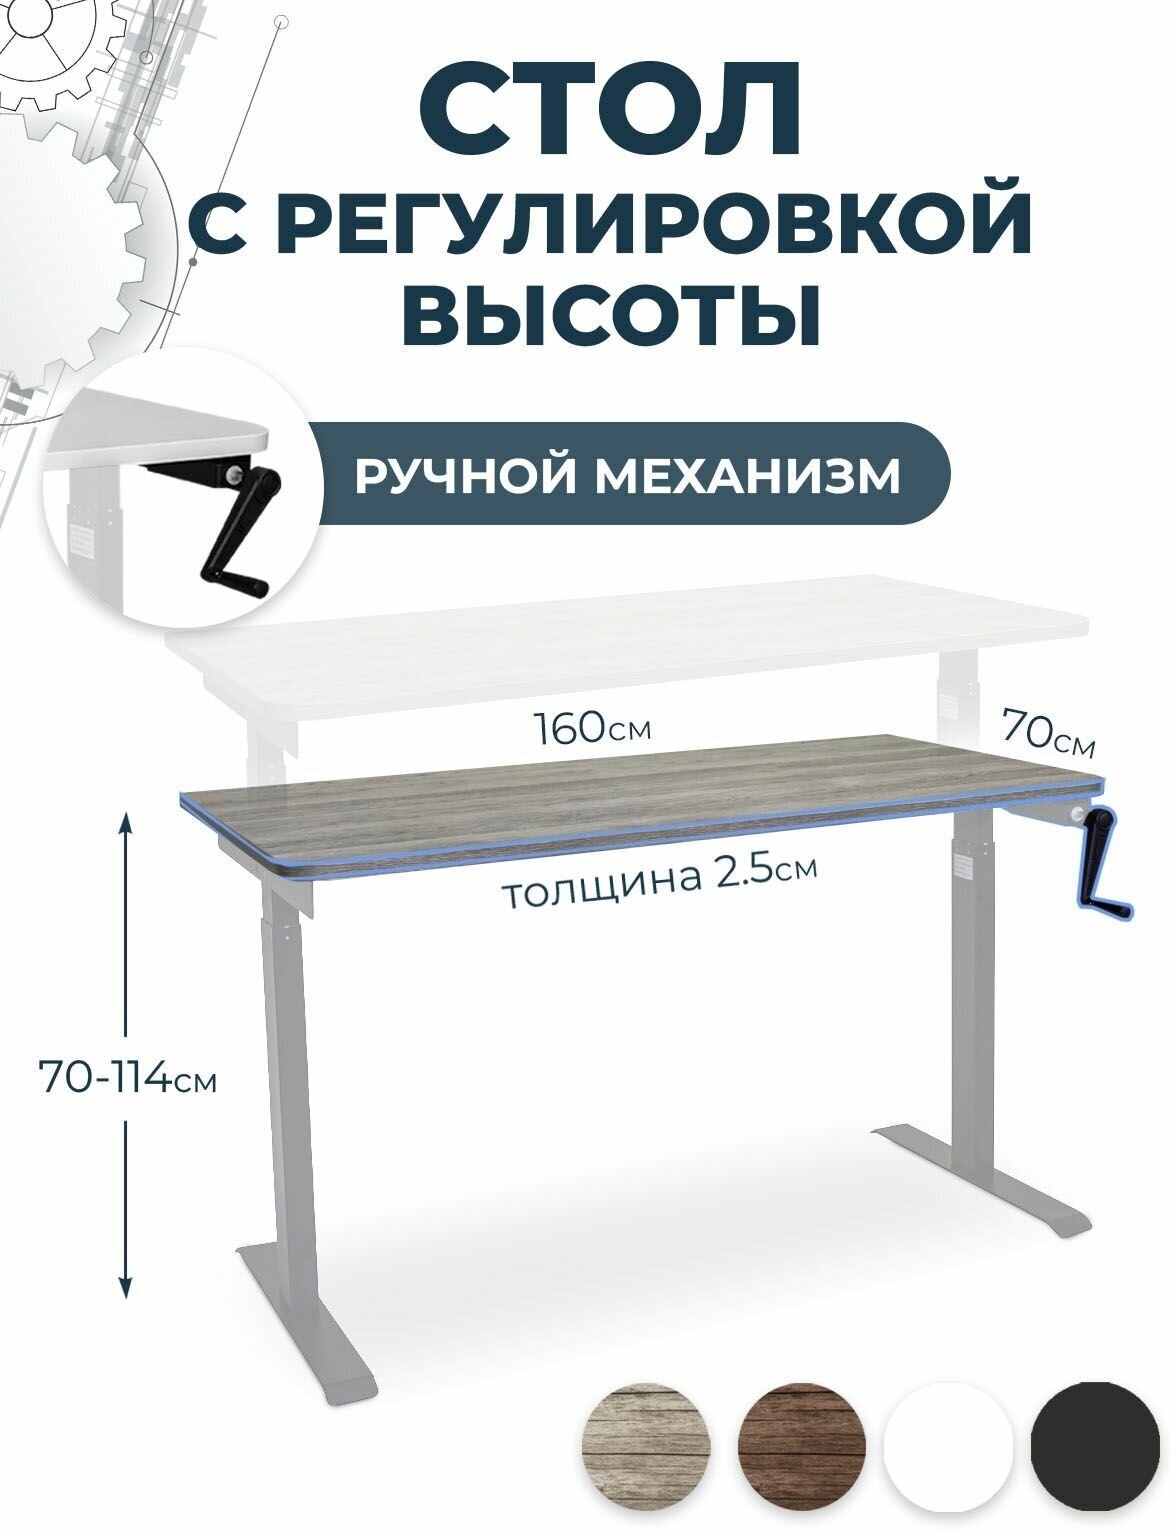 Офисный стол лофт для работы стоя и сидя LuxAlto, серый, столешница ЛДСП 160x70x2,5 см, модель подстолья М1 - фотография № 1